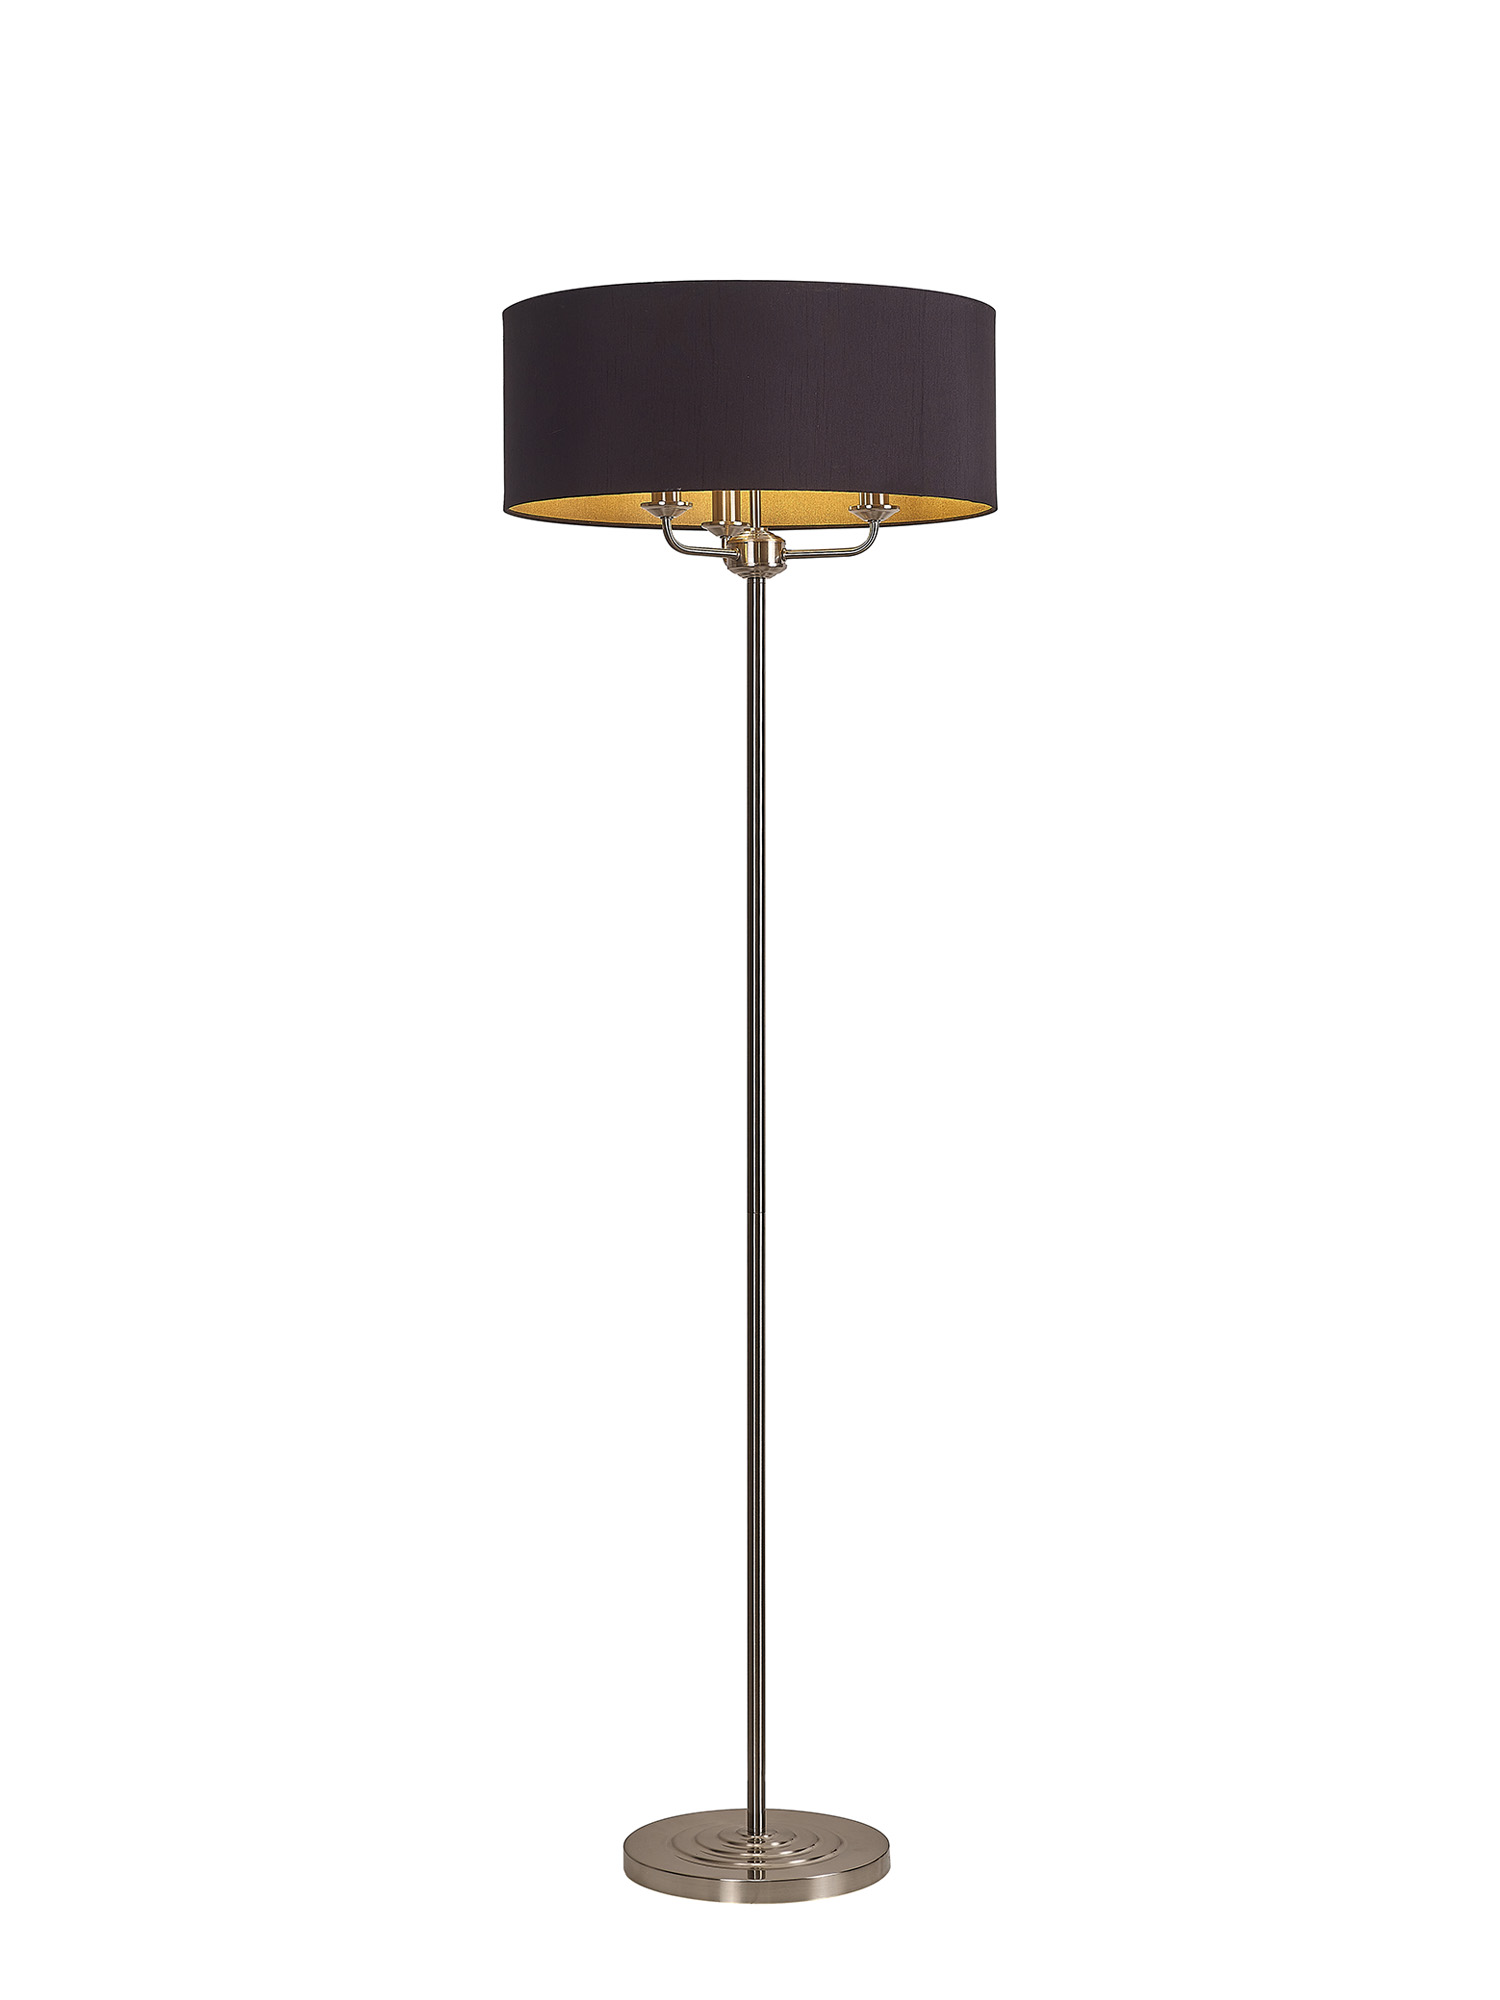 DK0933  Banyan 45cm 3 Light Floor Lamp Satin Nickel, Midnight Black